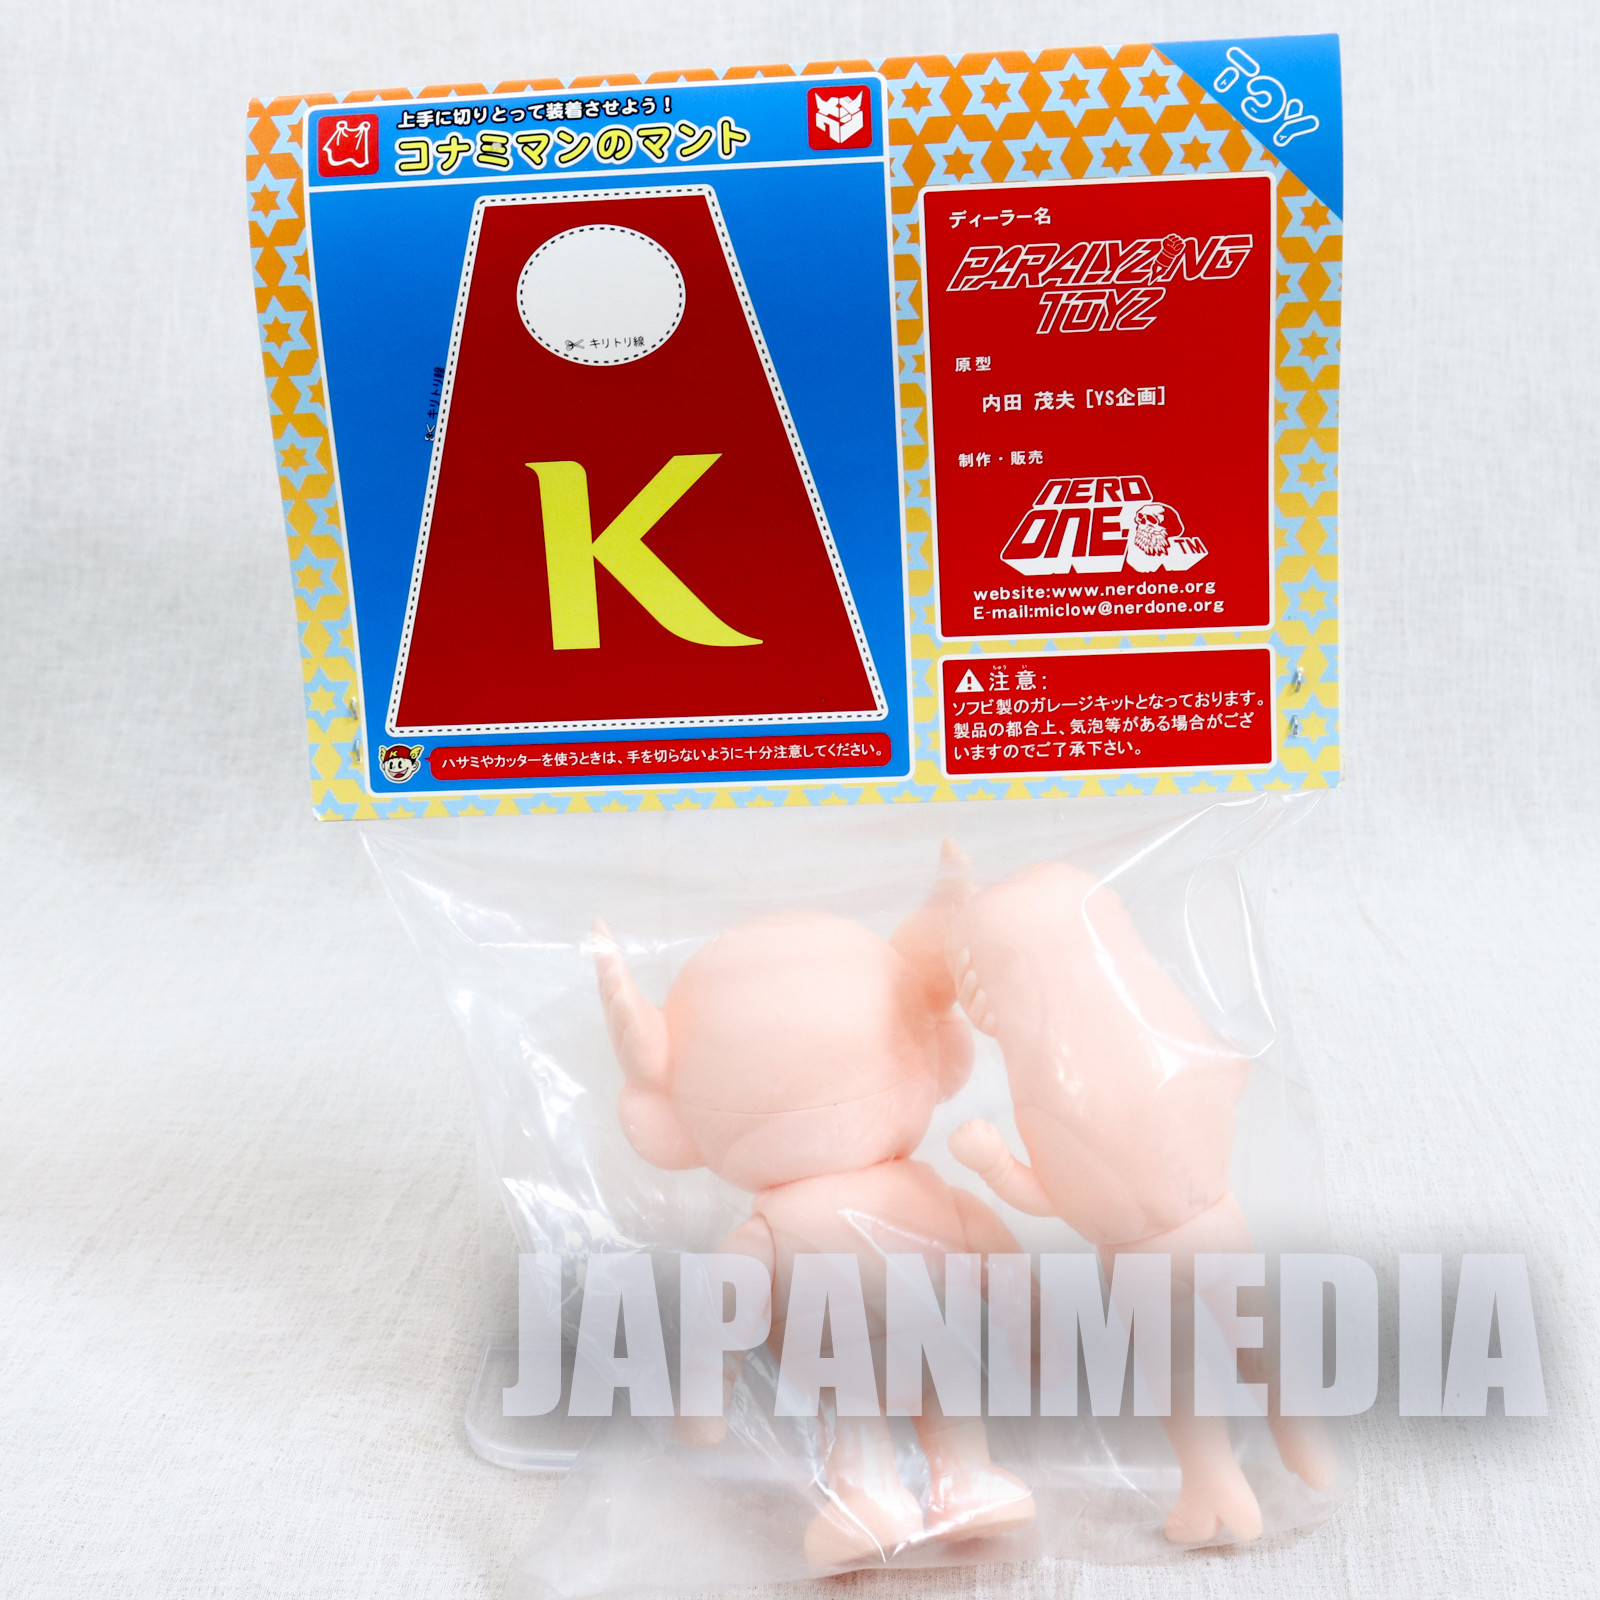 Konami Wai Wai World Konami Man & Lady Soft Vinyl Model Kit Wonder Festival 2013